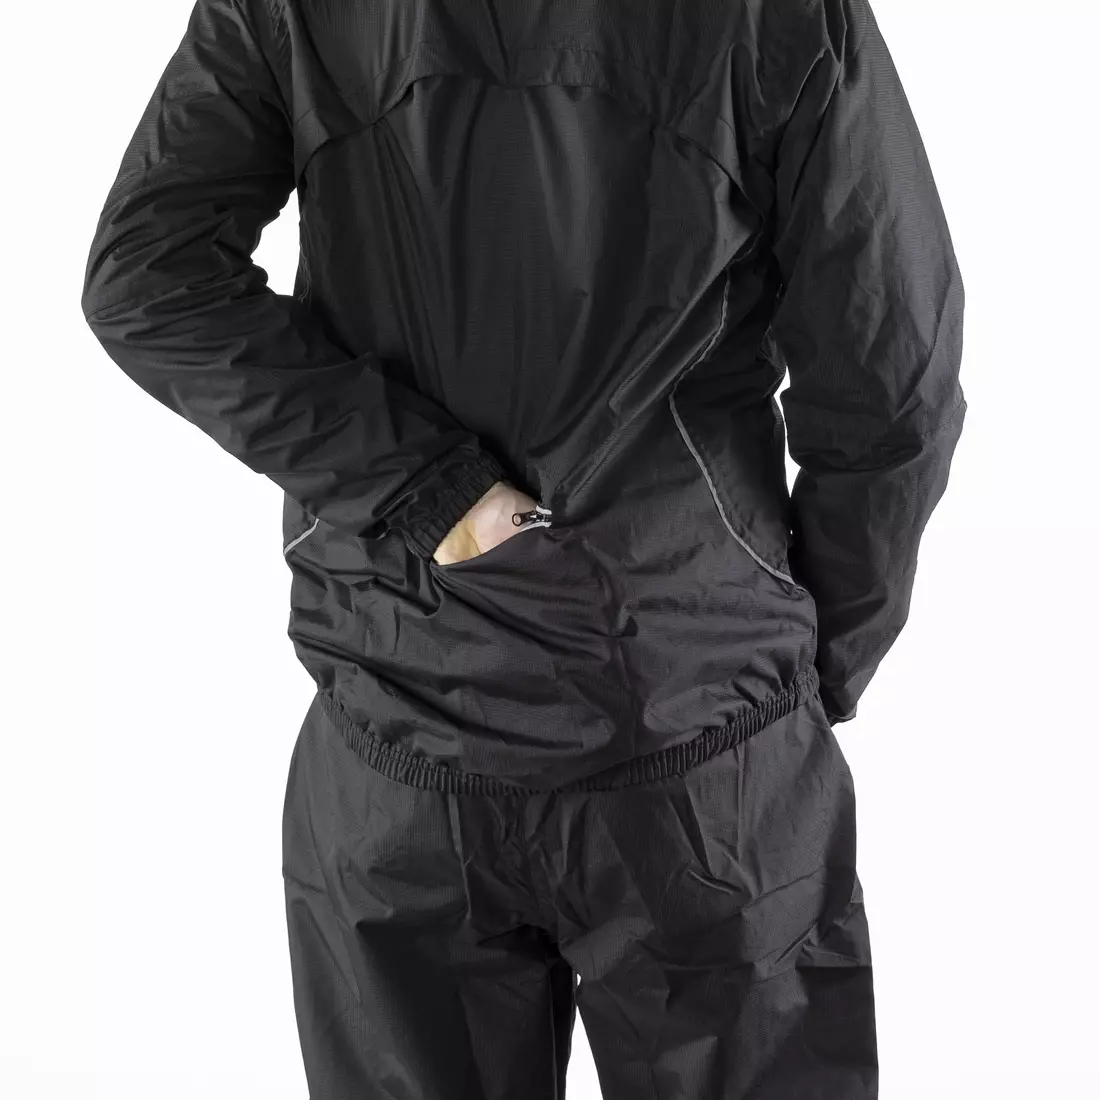 KAYMAQ J1 férfi kapucnis eső kerékpáros dzseki, fekete